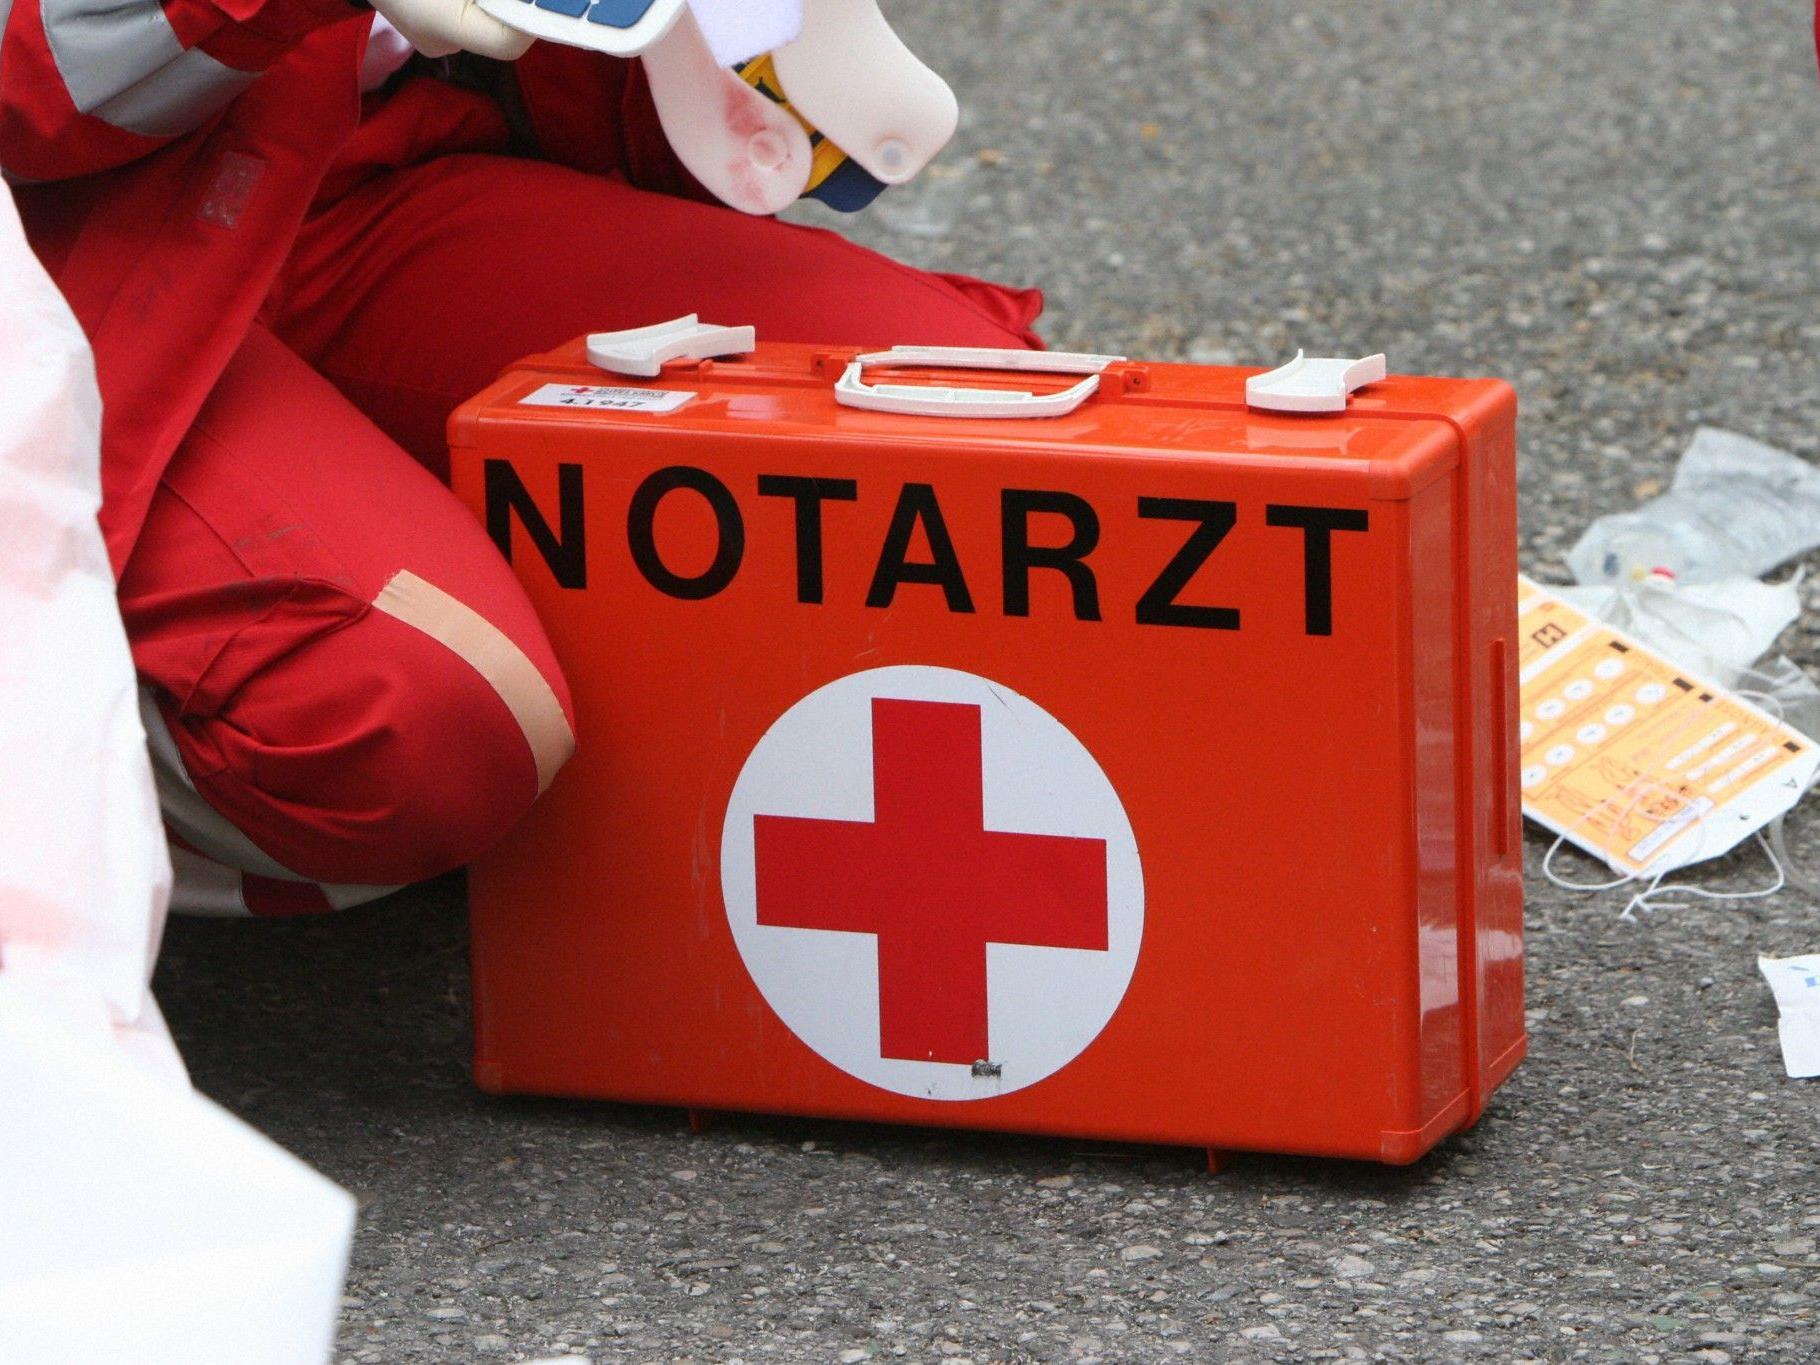 Nach Erstversorgung durch den Notarzt wurde der 26-Jährige mit Verbrennungen zweiten und dritten Grades an beiden Händen in das Unfallkrankenhaus Linz eingeliefert.